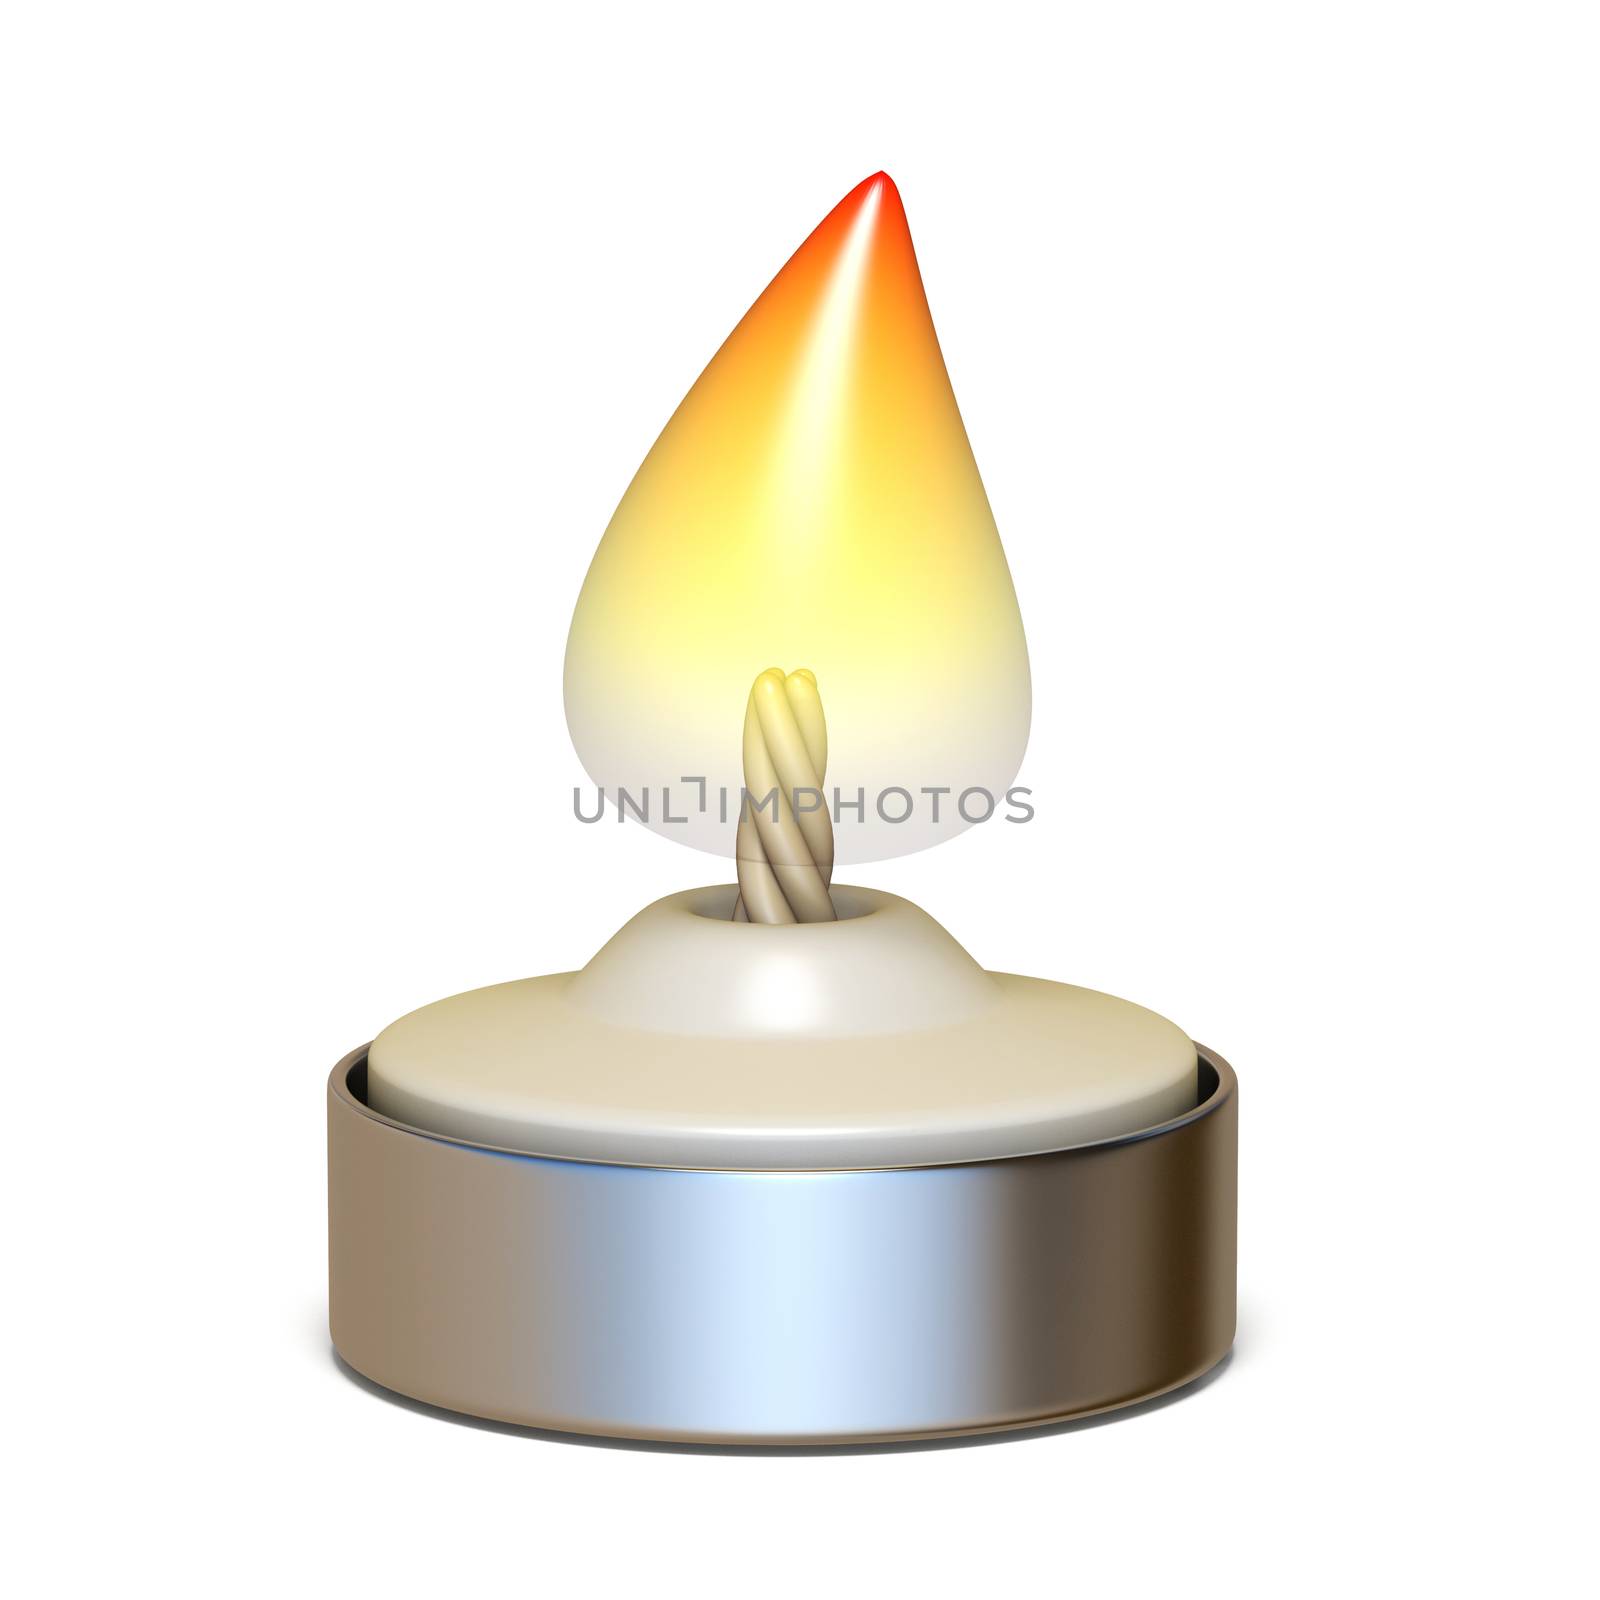 Burning candlelight 3D render illustration isolated on white background